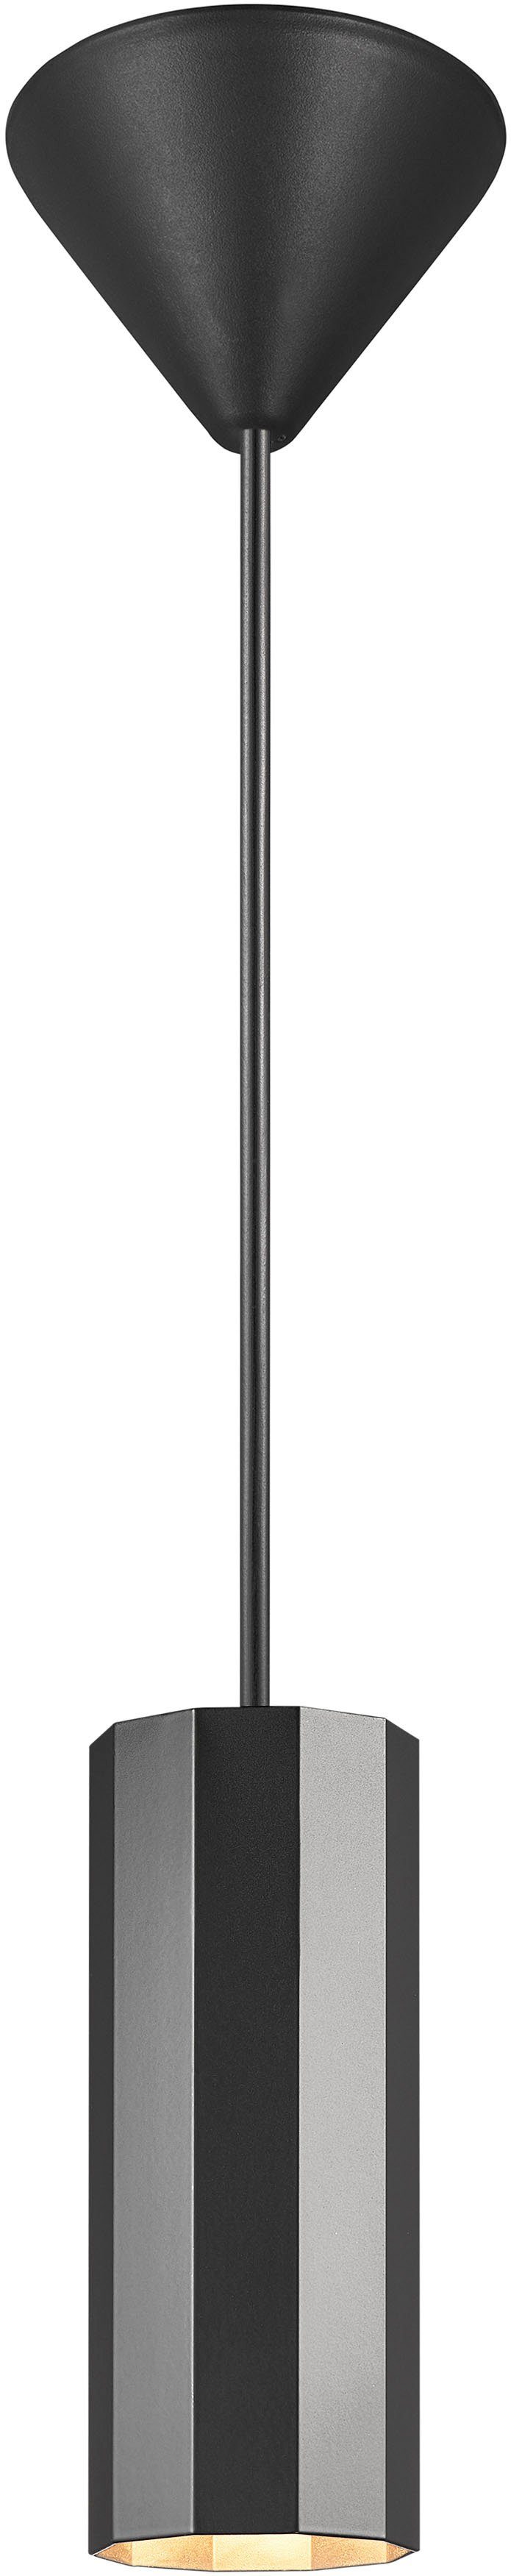 Nordlux Pendelleuchte Alanis, ohne Leuchtmittel, Minimalistisches Design, 10-seitiges Profil, matter Messing-Look